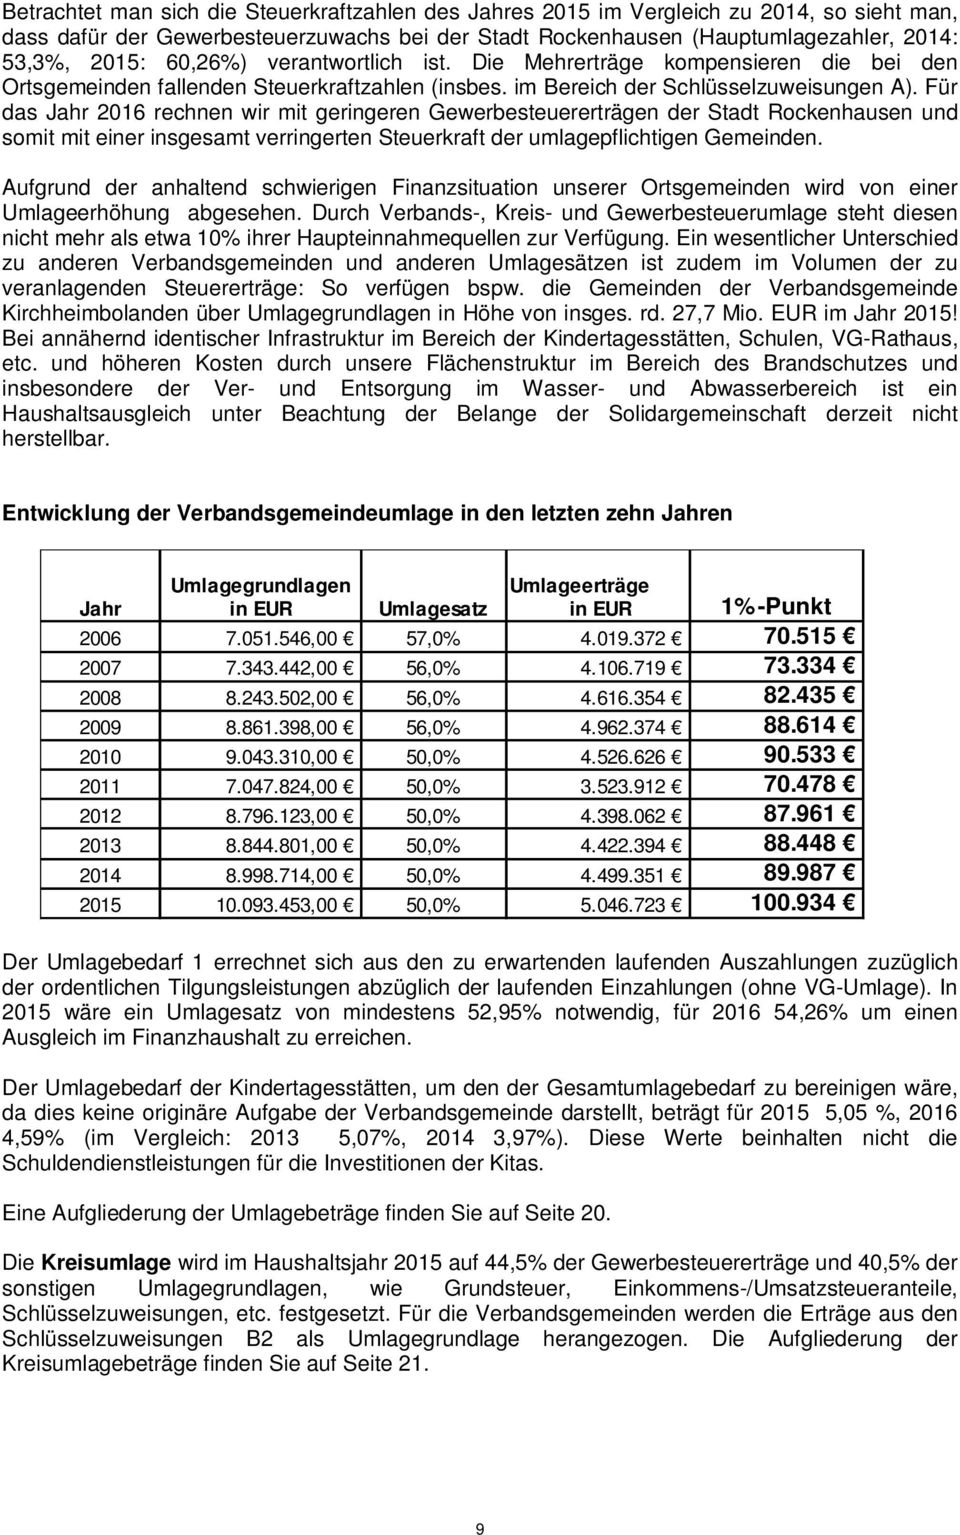 Für das Jahr 216 rechnen wir mit geringeren Gewerbesteuererträgen der Stadt Rockenhausen und somit mit einer insgesamt verringerten Steuerkraft der umlagepflichtigen Gemeinden.